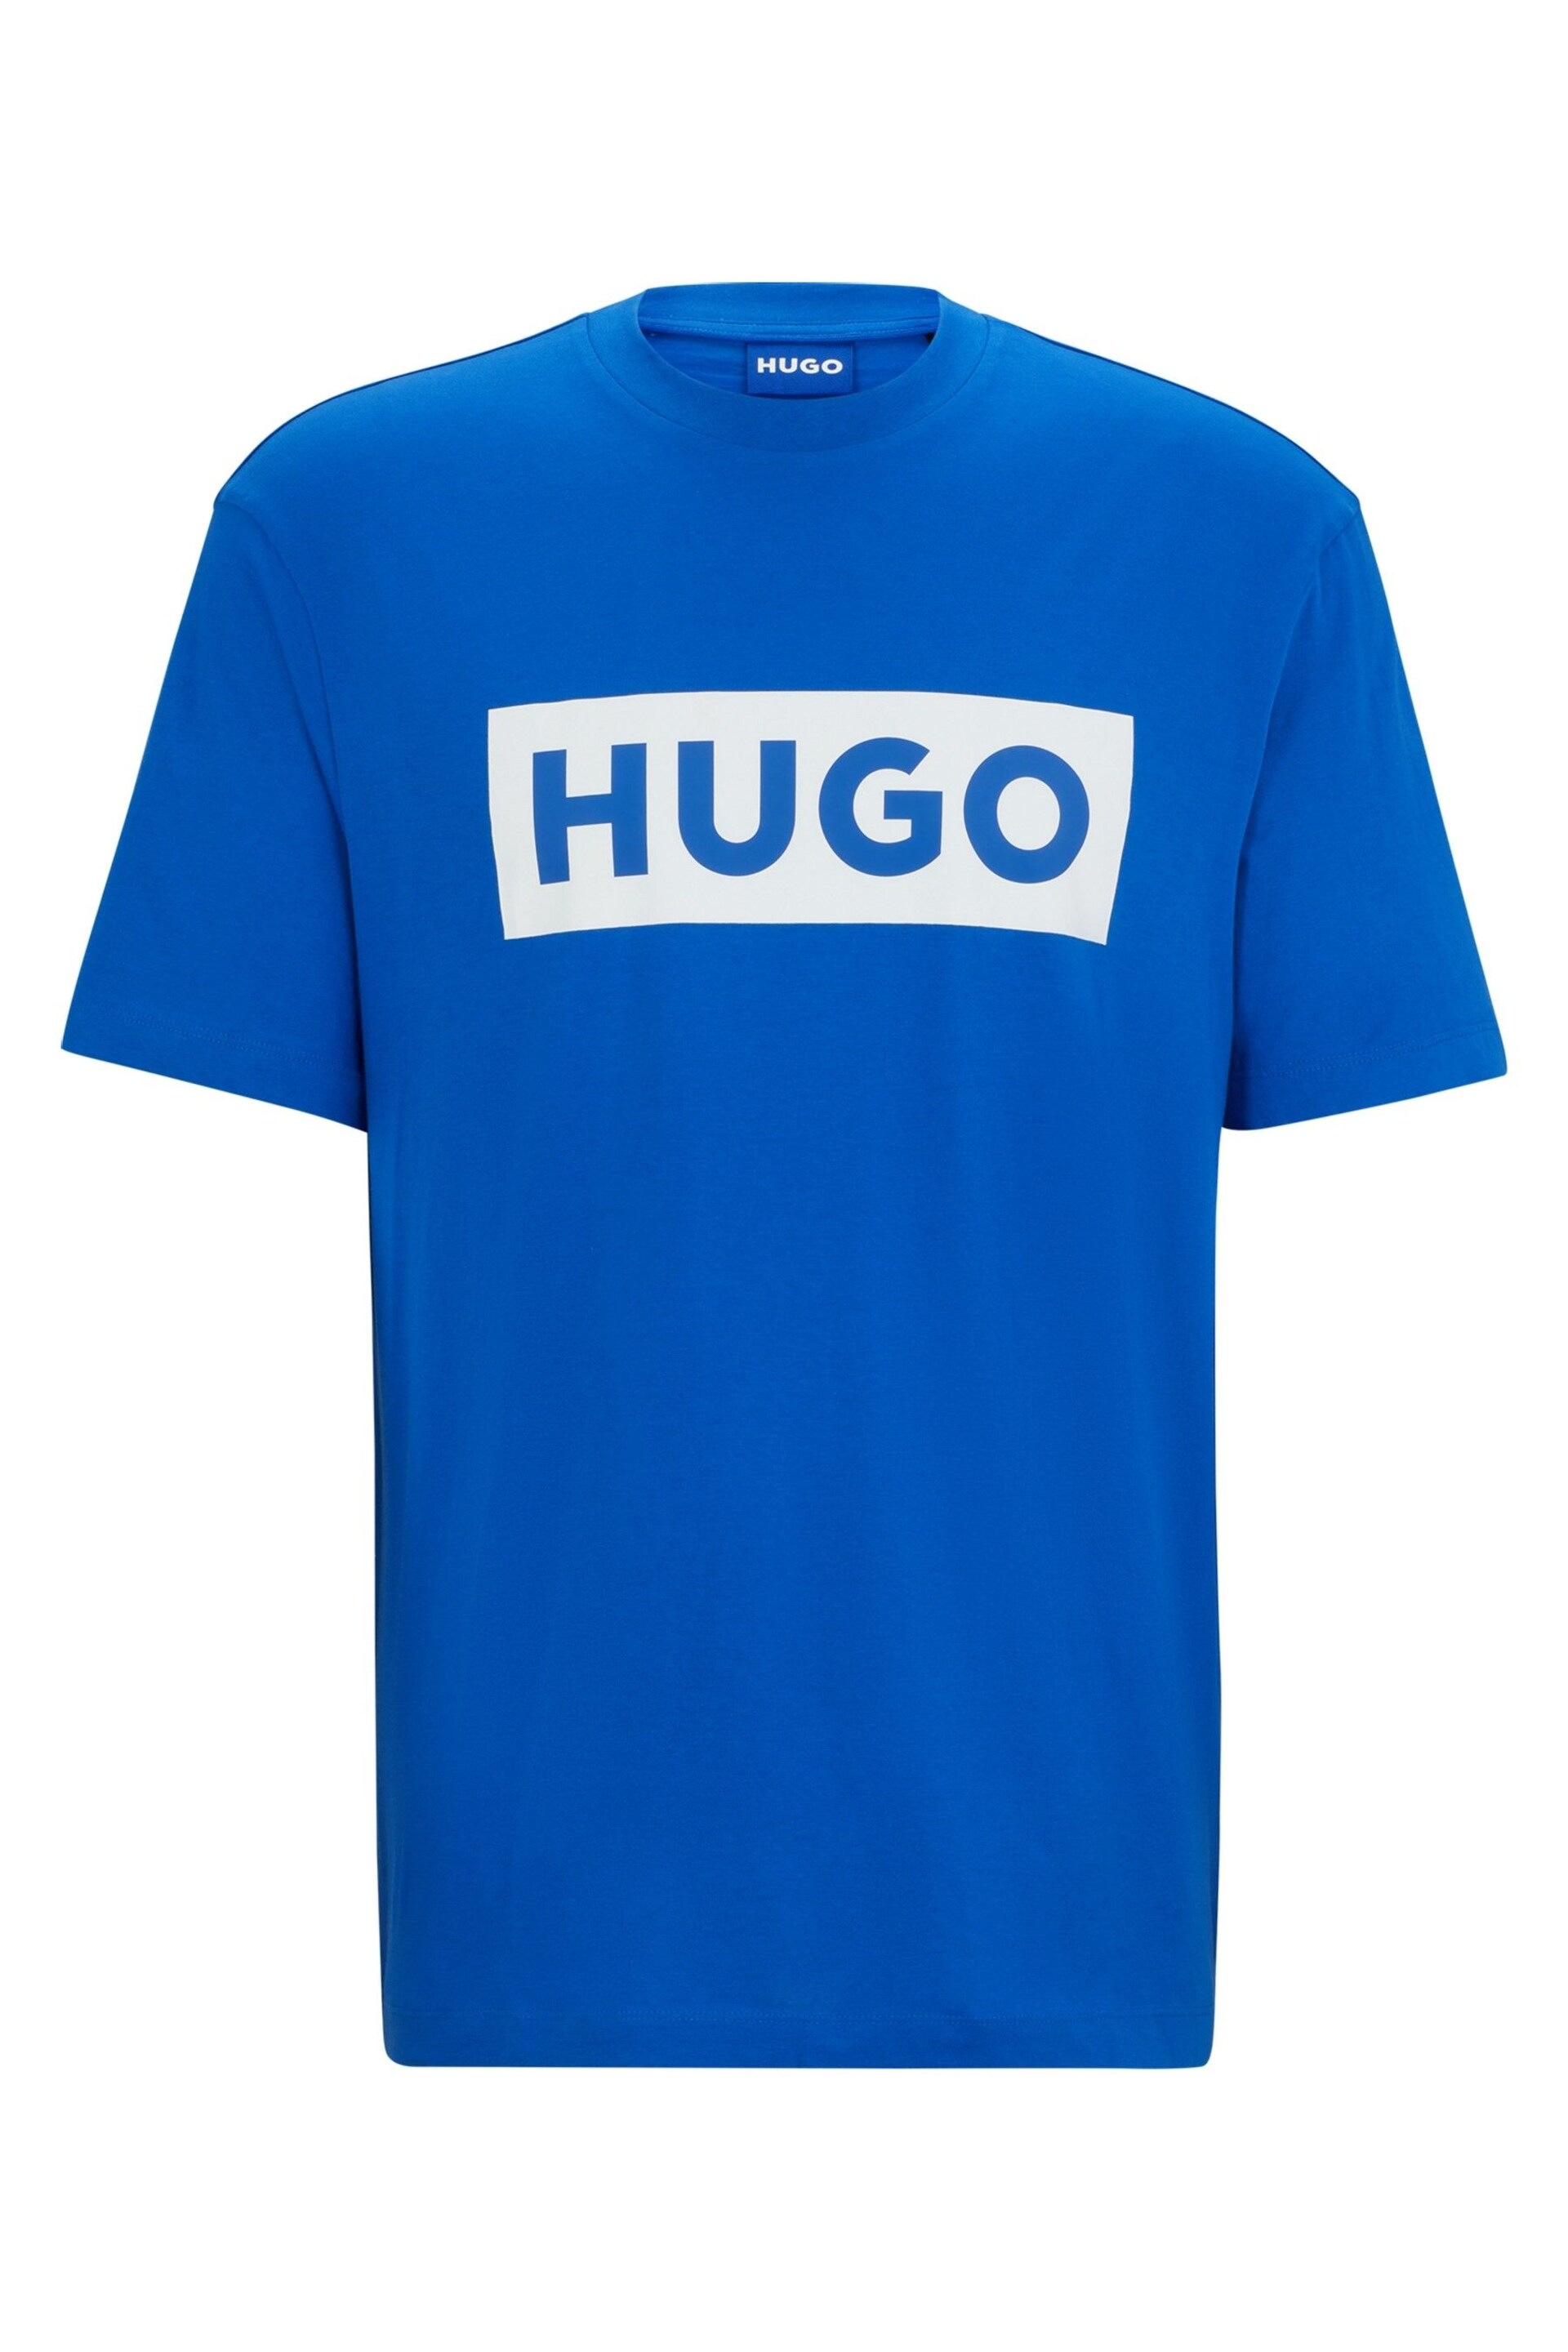 HUGO Blue Large Box Logo T-Shirt - Image 3 of 3